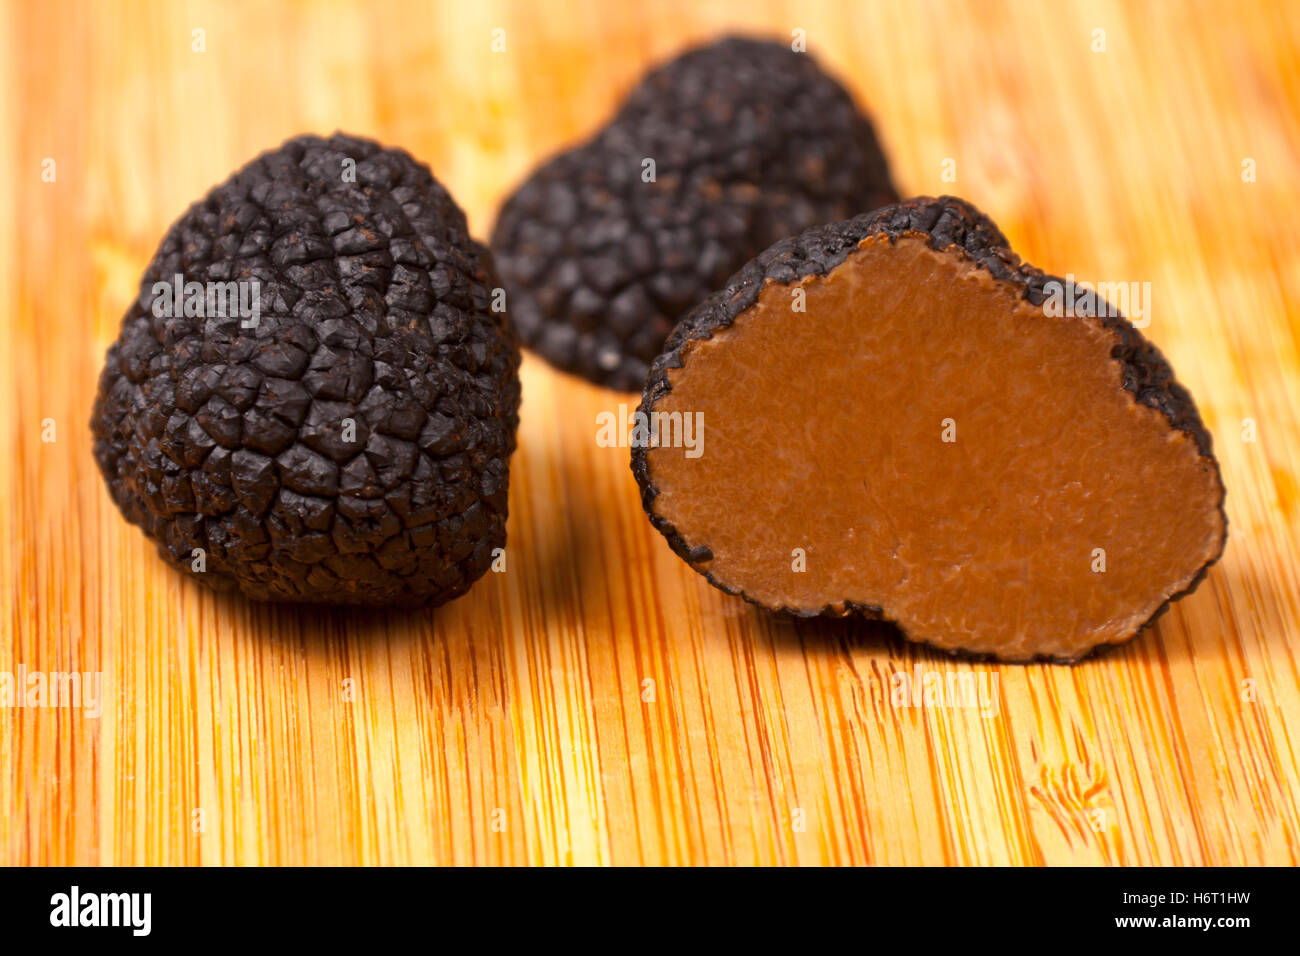 Aliment alimentaire jetblack basané noir deep black champignon gastronomique truffes comestibles toile fond fond de la santé alimentaire aliment Banque D'Images